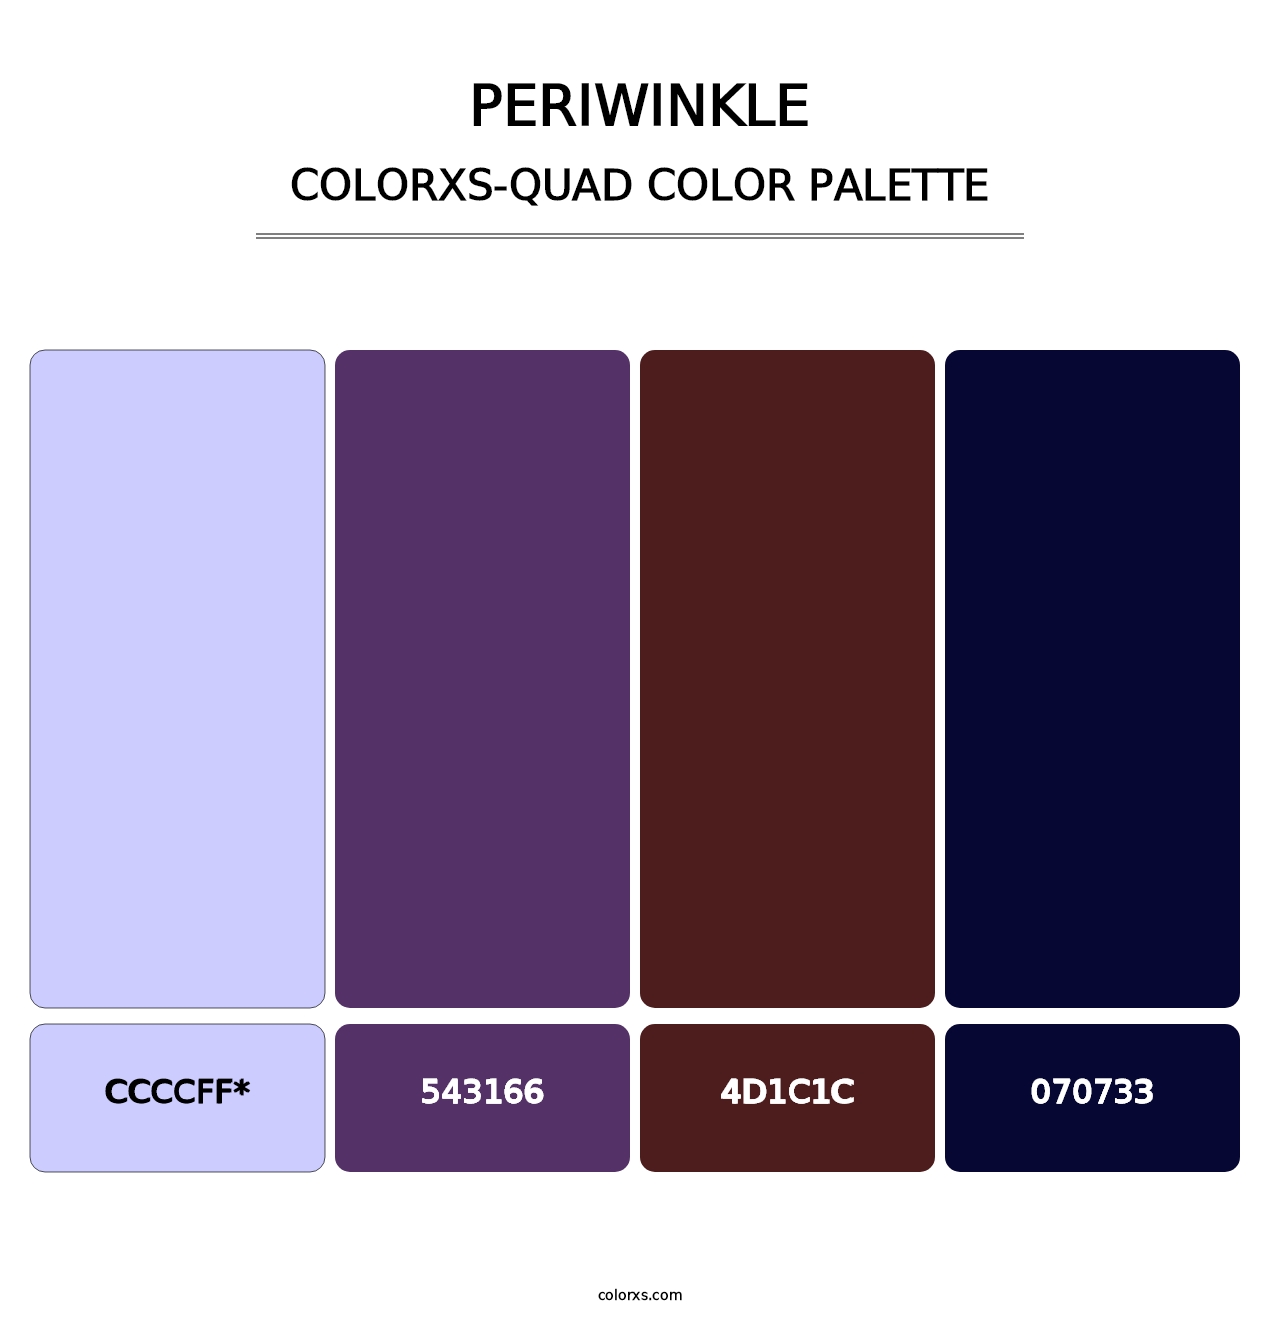 Periwinkle - Colorxs Quad Palette